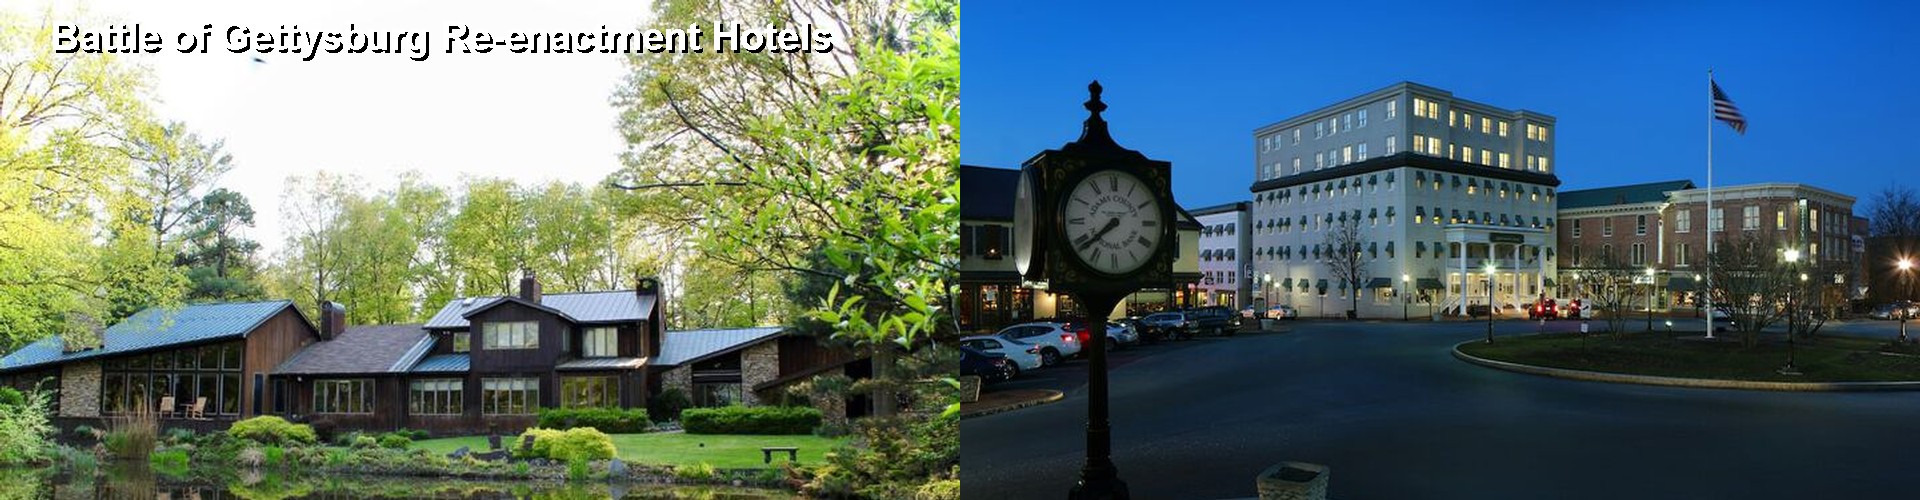 5 Best Hotels near Battle of Gettysburg Re-enactment